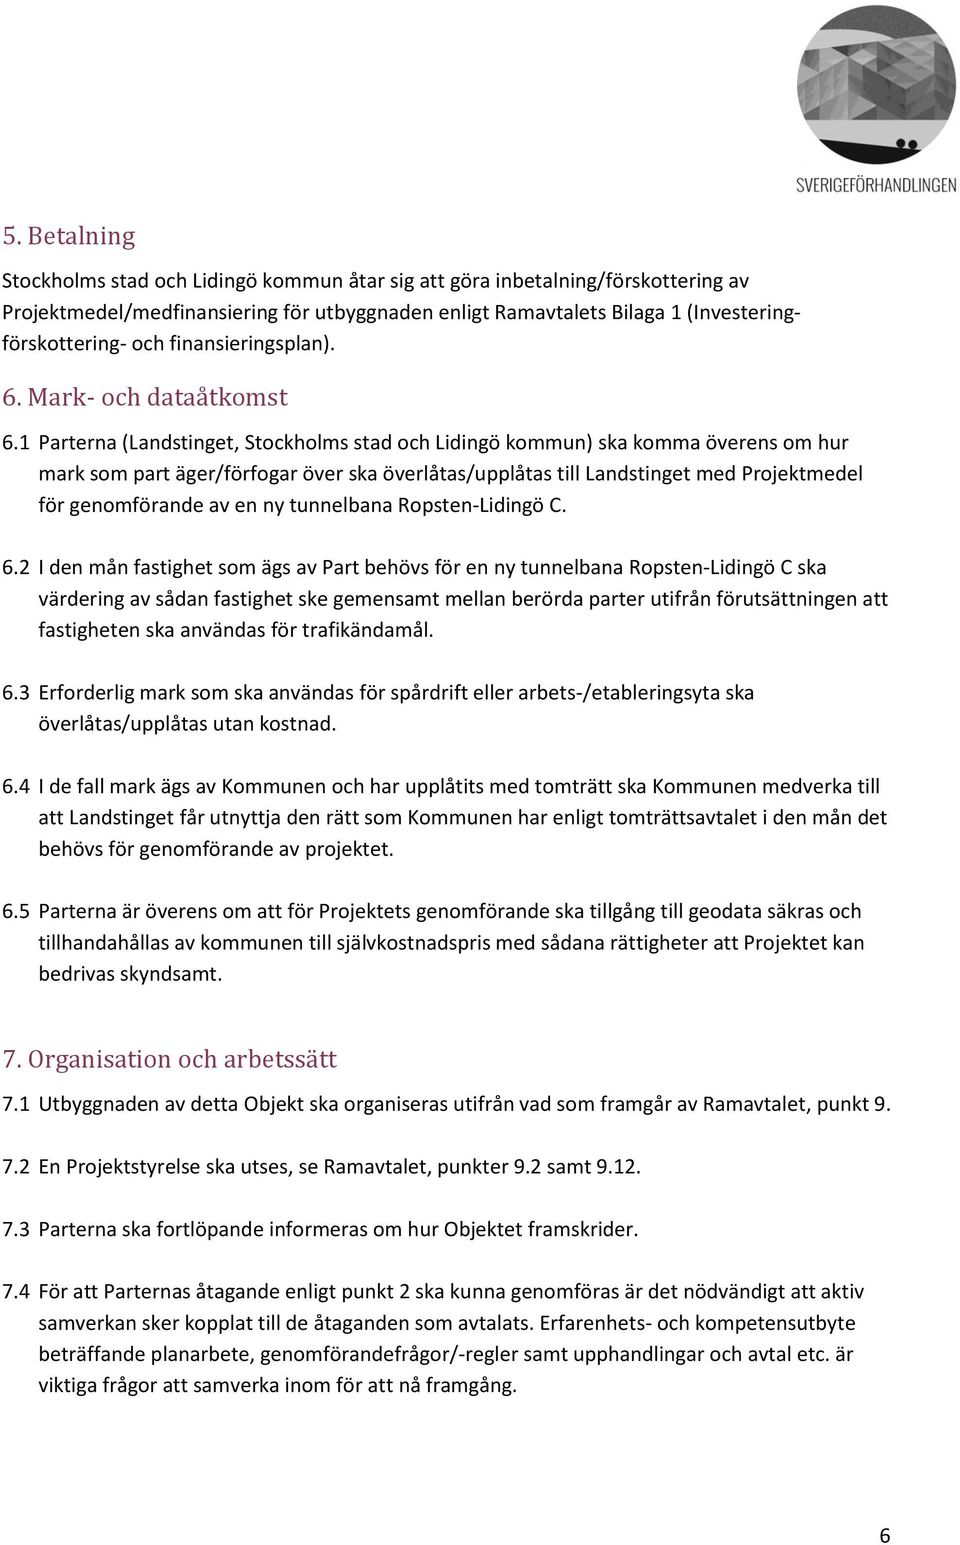 1 Parterna (Landstinget, Stockholms stad och Lidingö kommun) ska komma överens om hur mark som part äger/förfogar över ska överlåtas/upplåtas till Landstinget med Projektmedel för genomförande av en